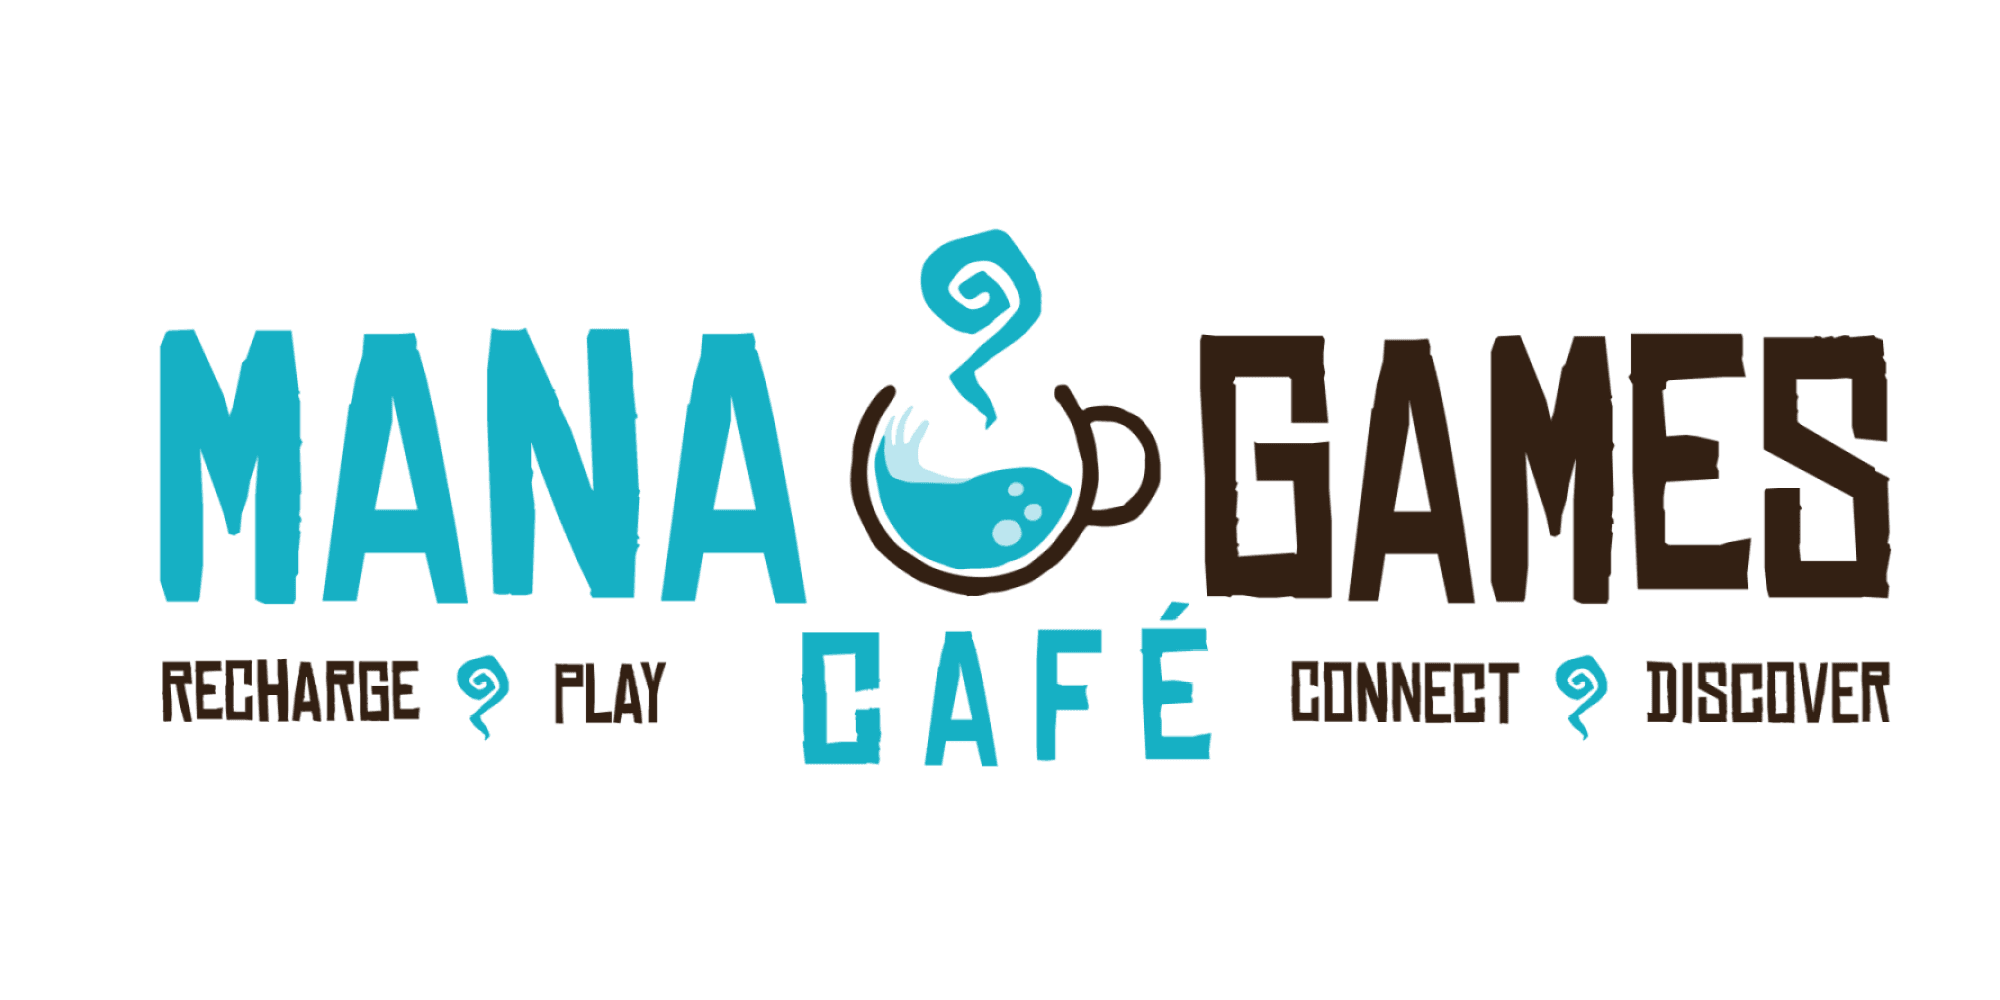 Mana Games Café